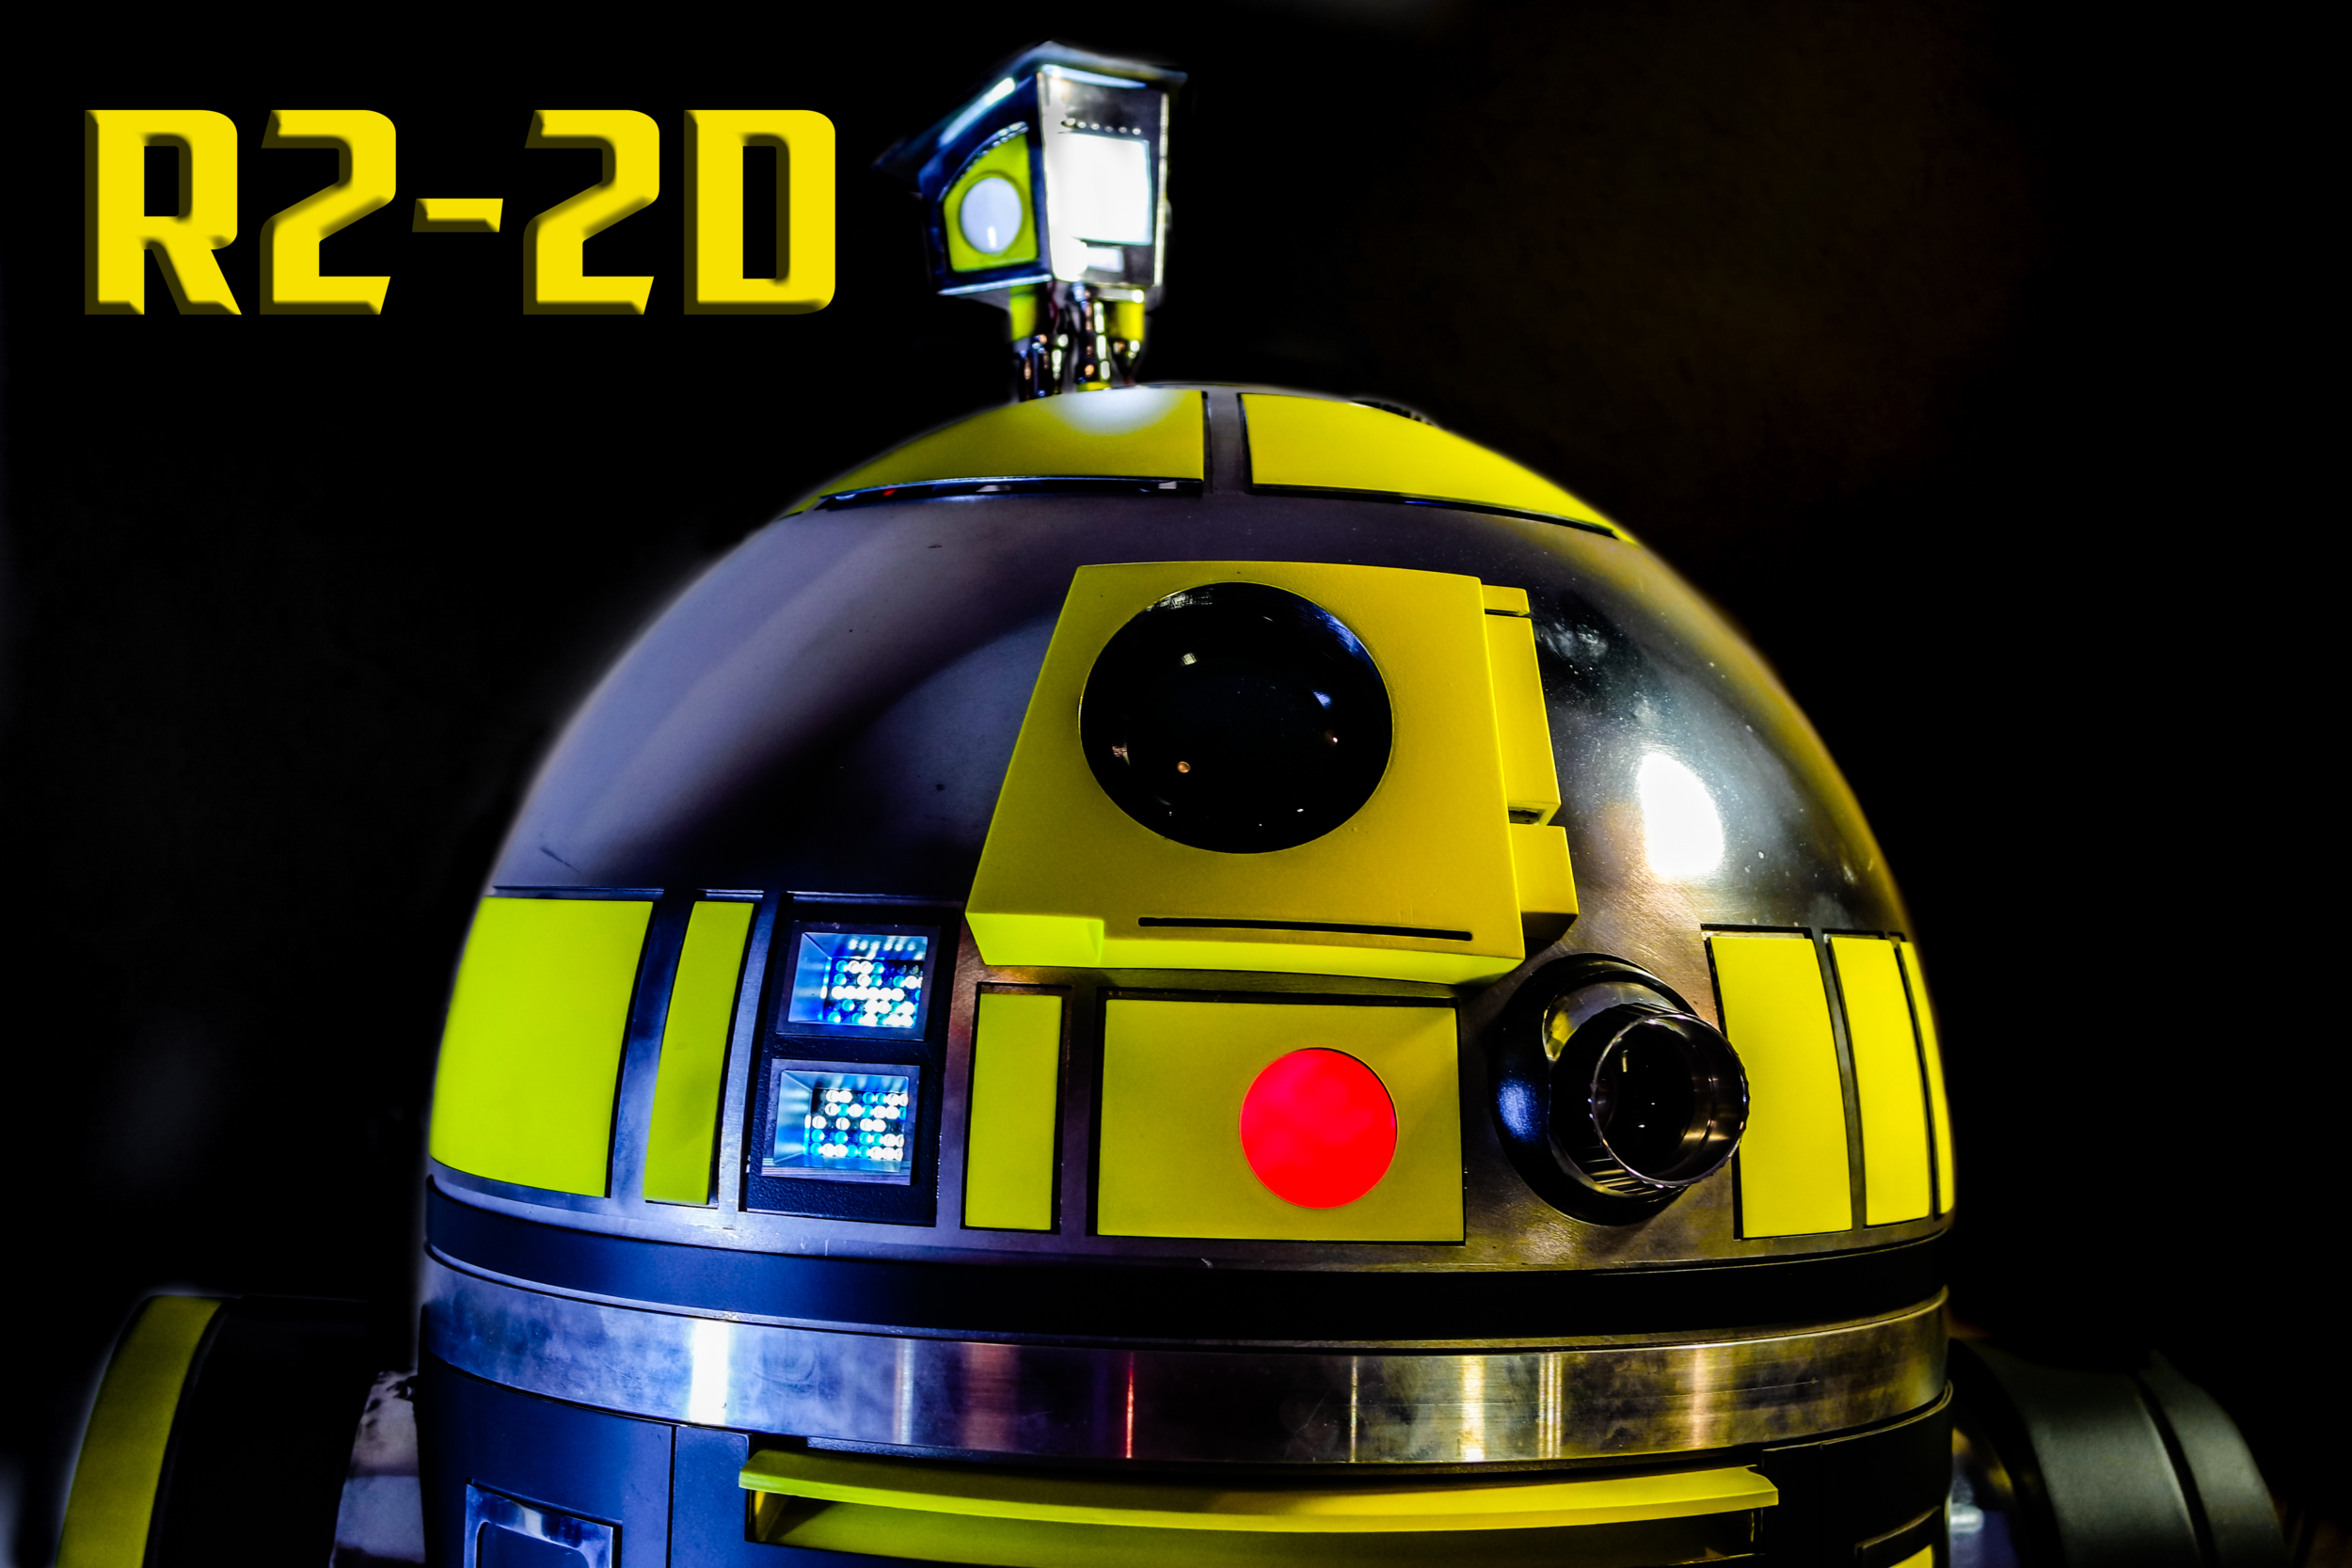 R2-2D